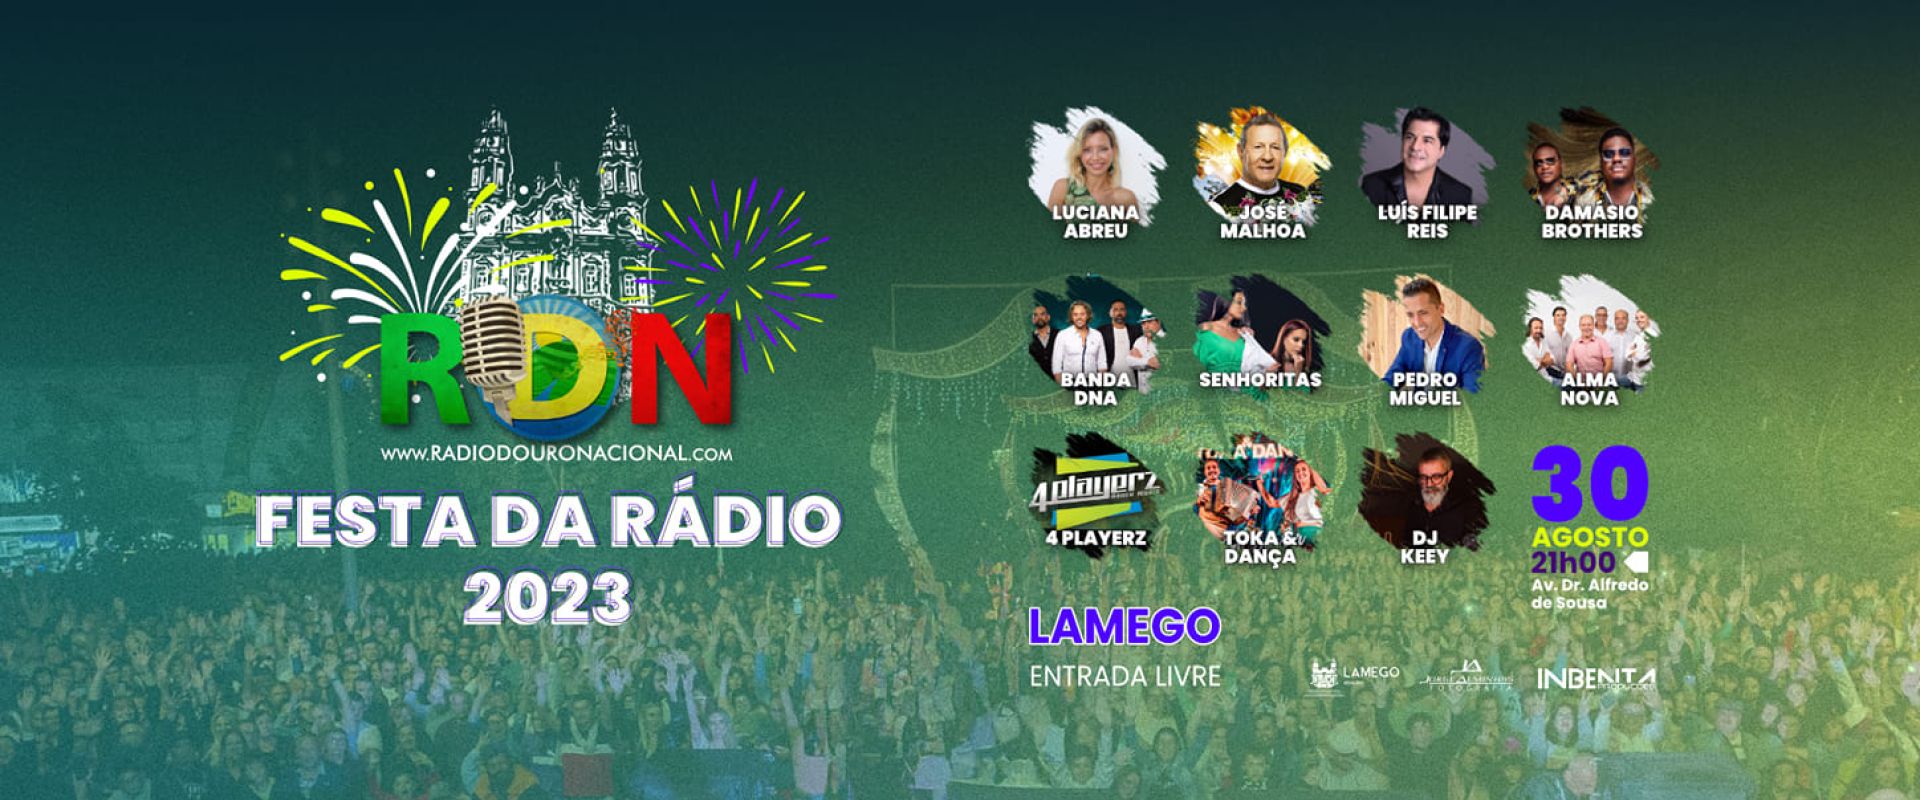 Festa da Rádio Douro Nacional 2023